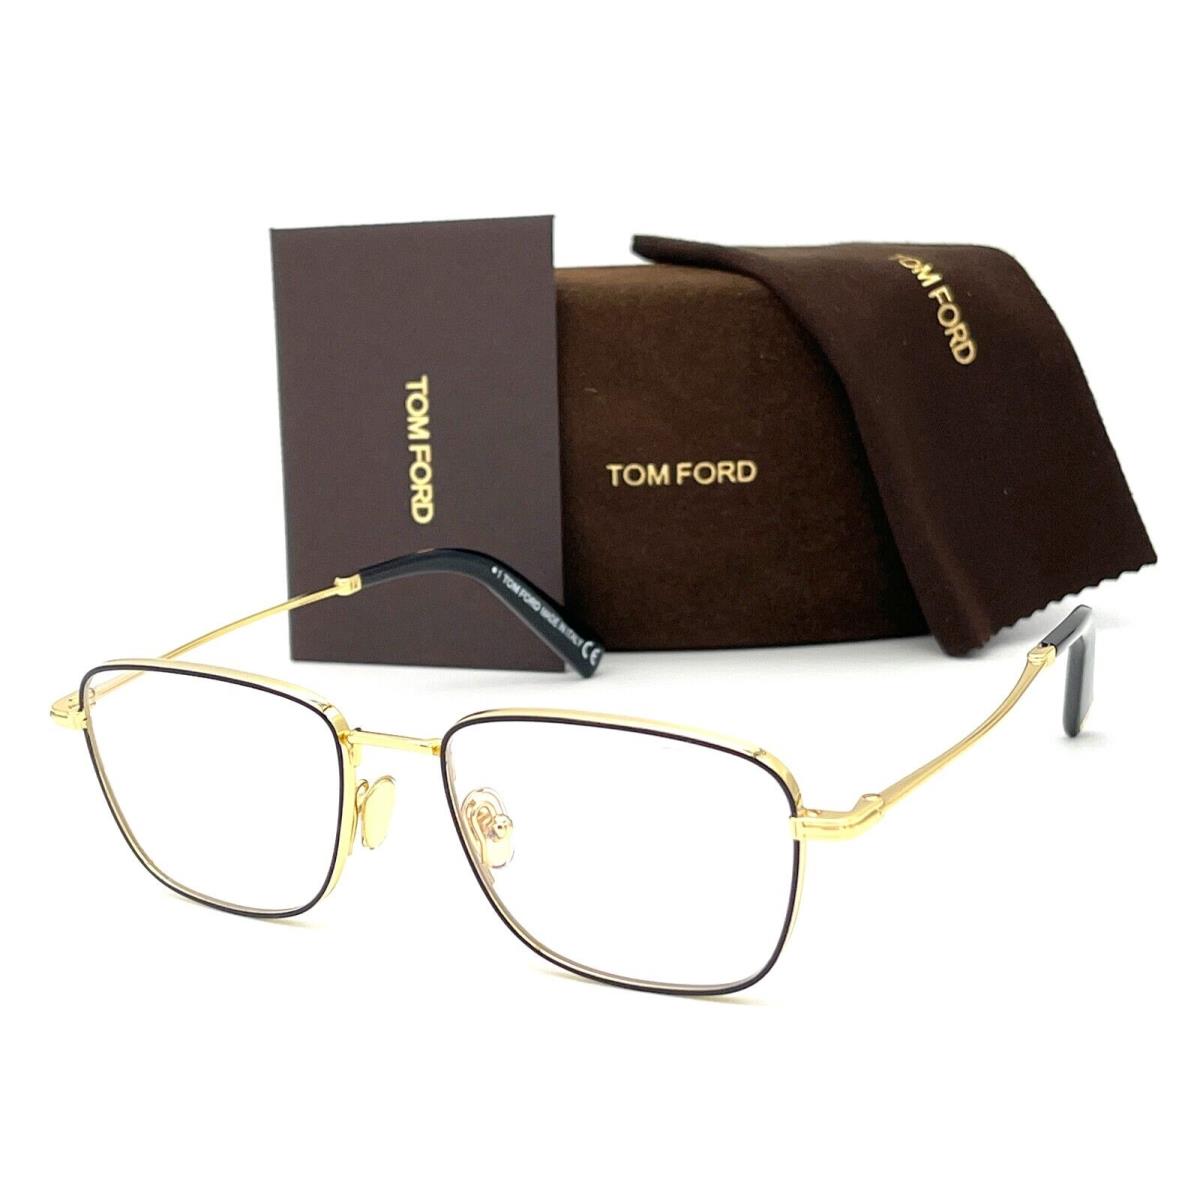 Tom Ford eyeglasses  - Black Gold Frame, Blue Block Lens 0